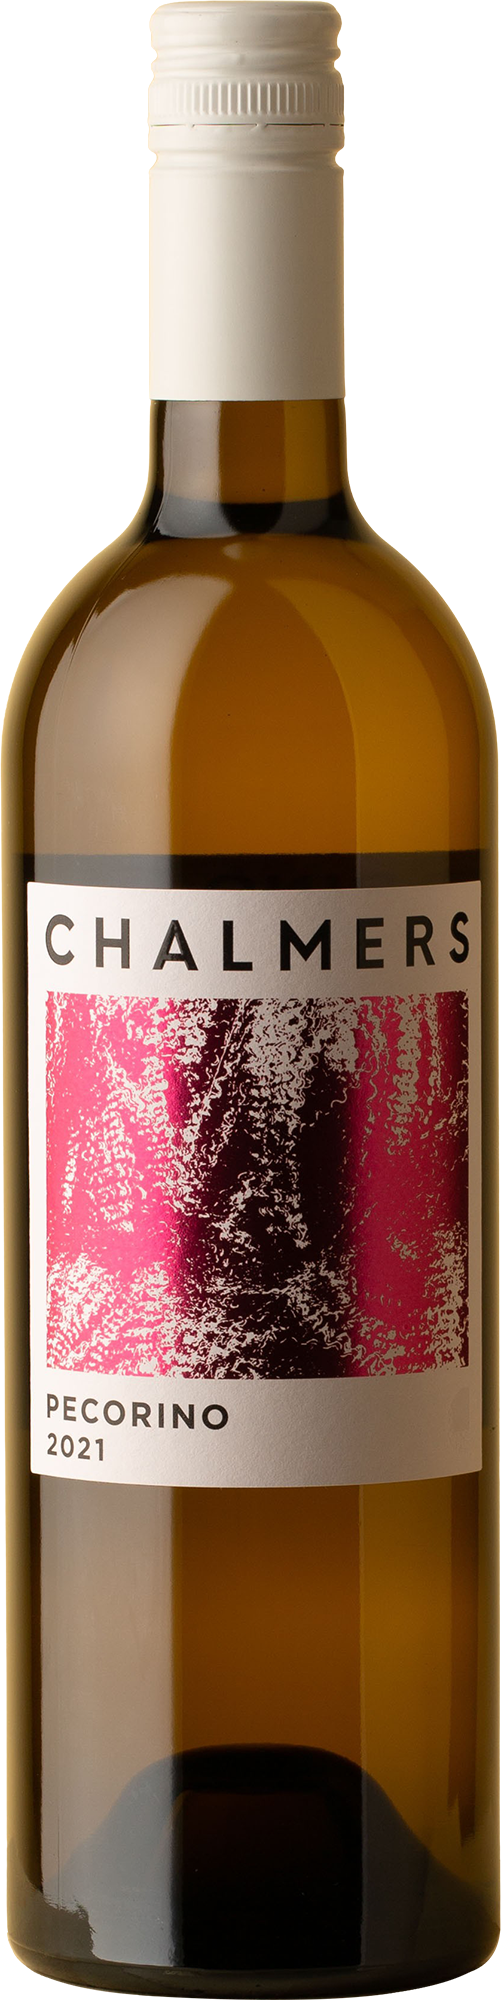 Chalmers - Pecorino 2021 White Wine